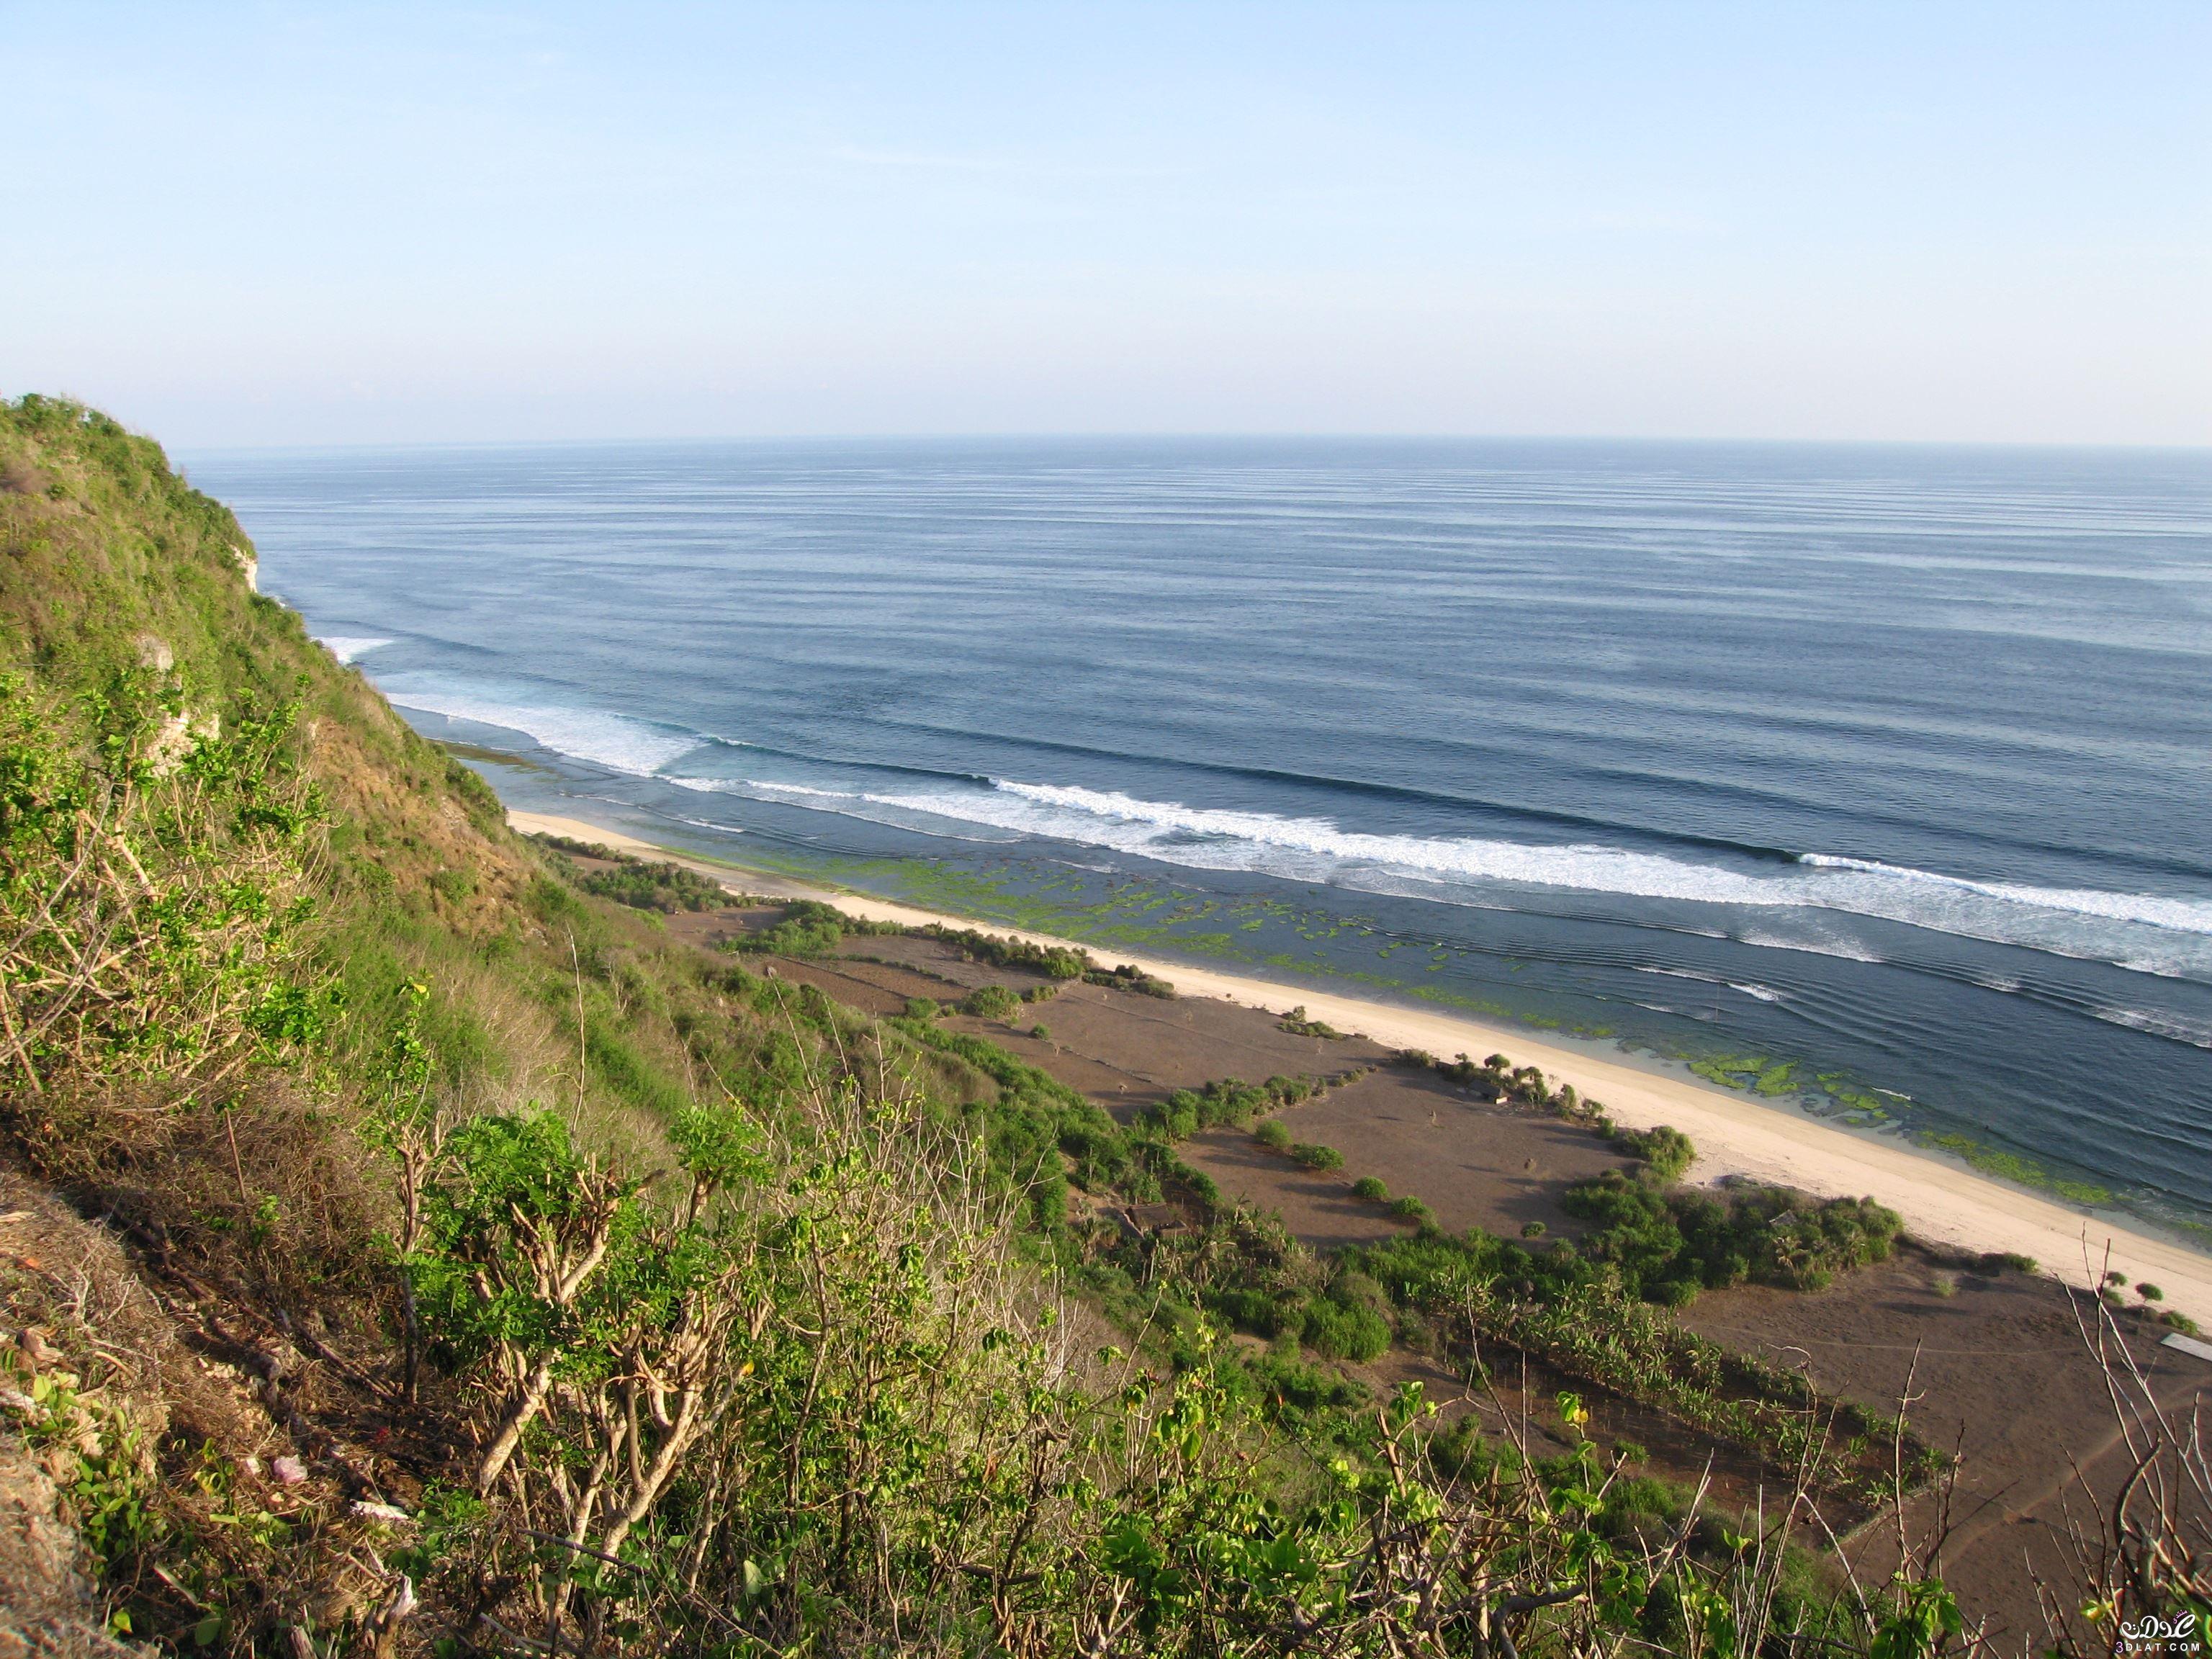 الشواطئ الشعبية في بالي, تعرفى على الشواطئ الشعبية في بالي